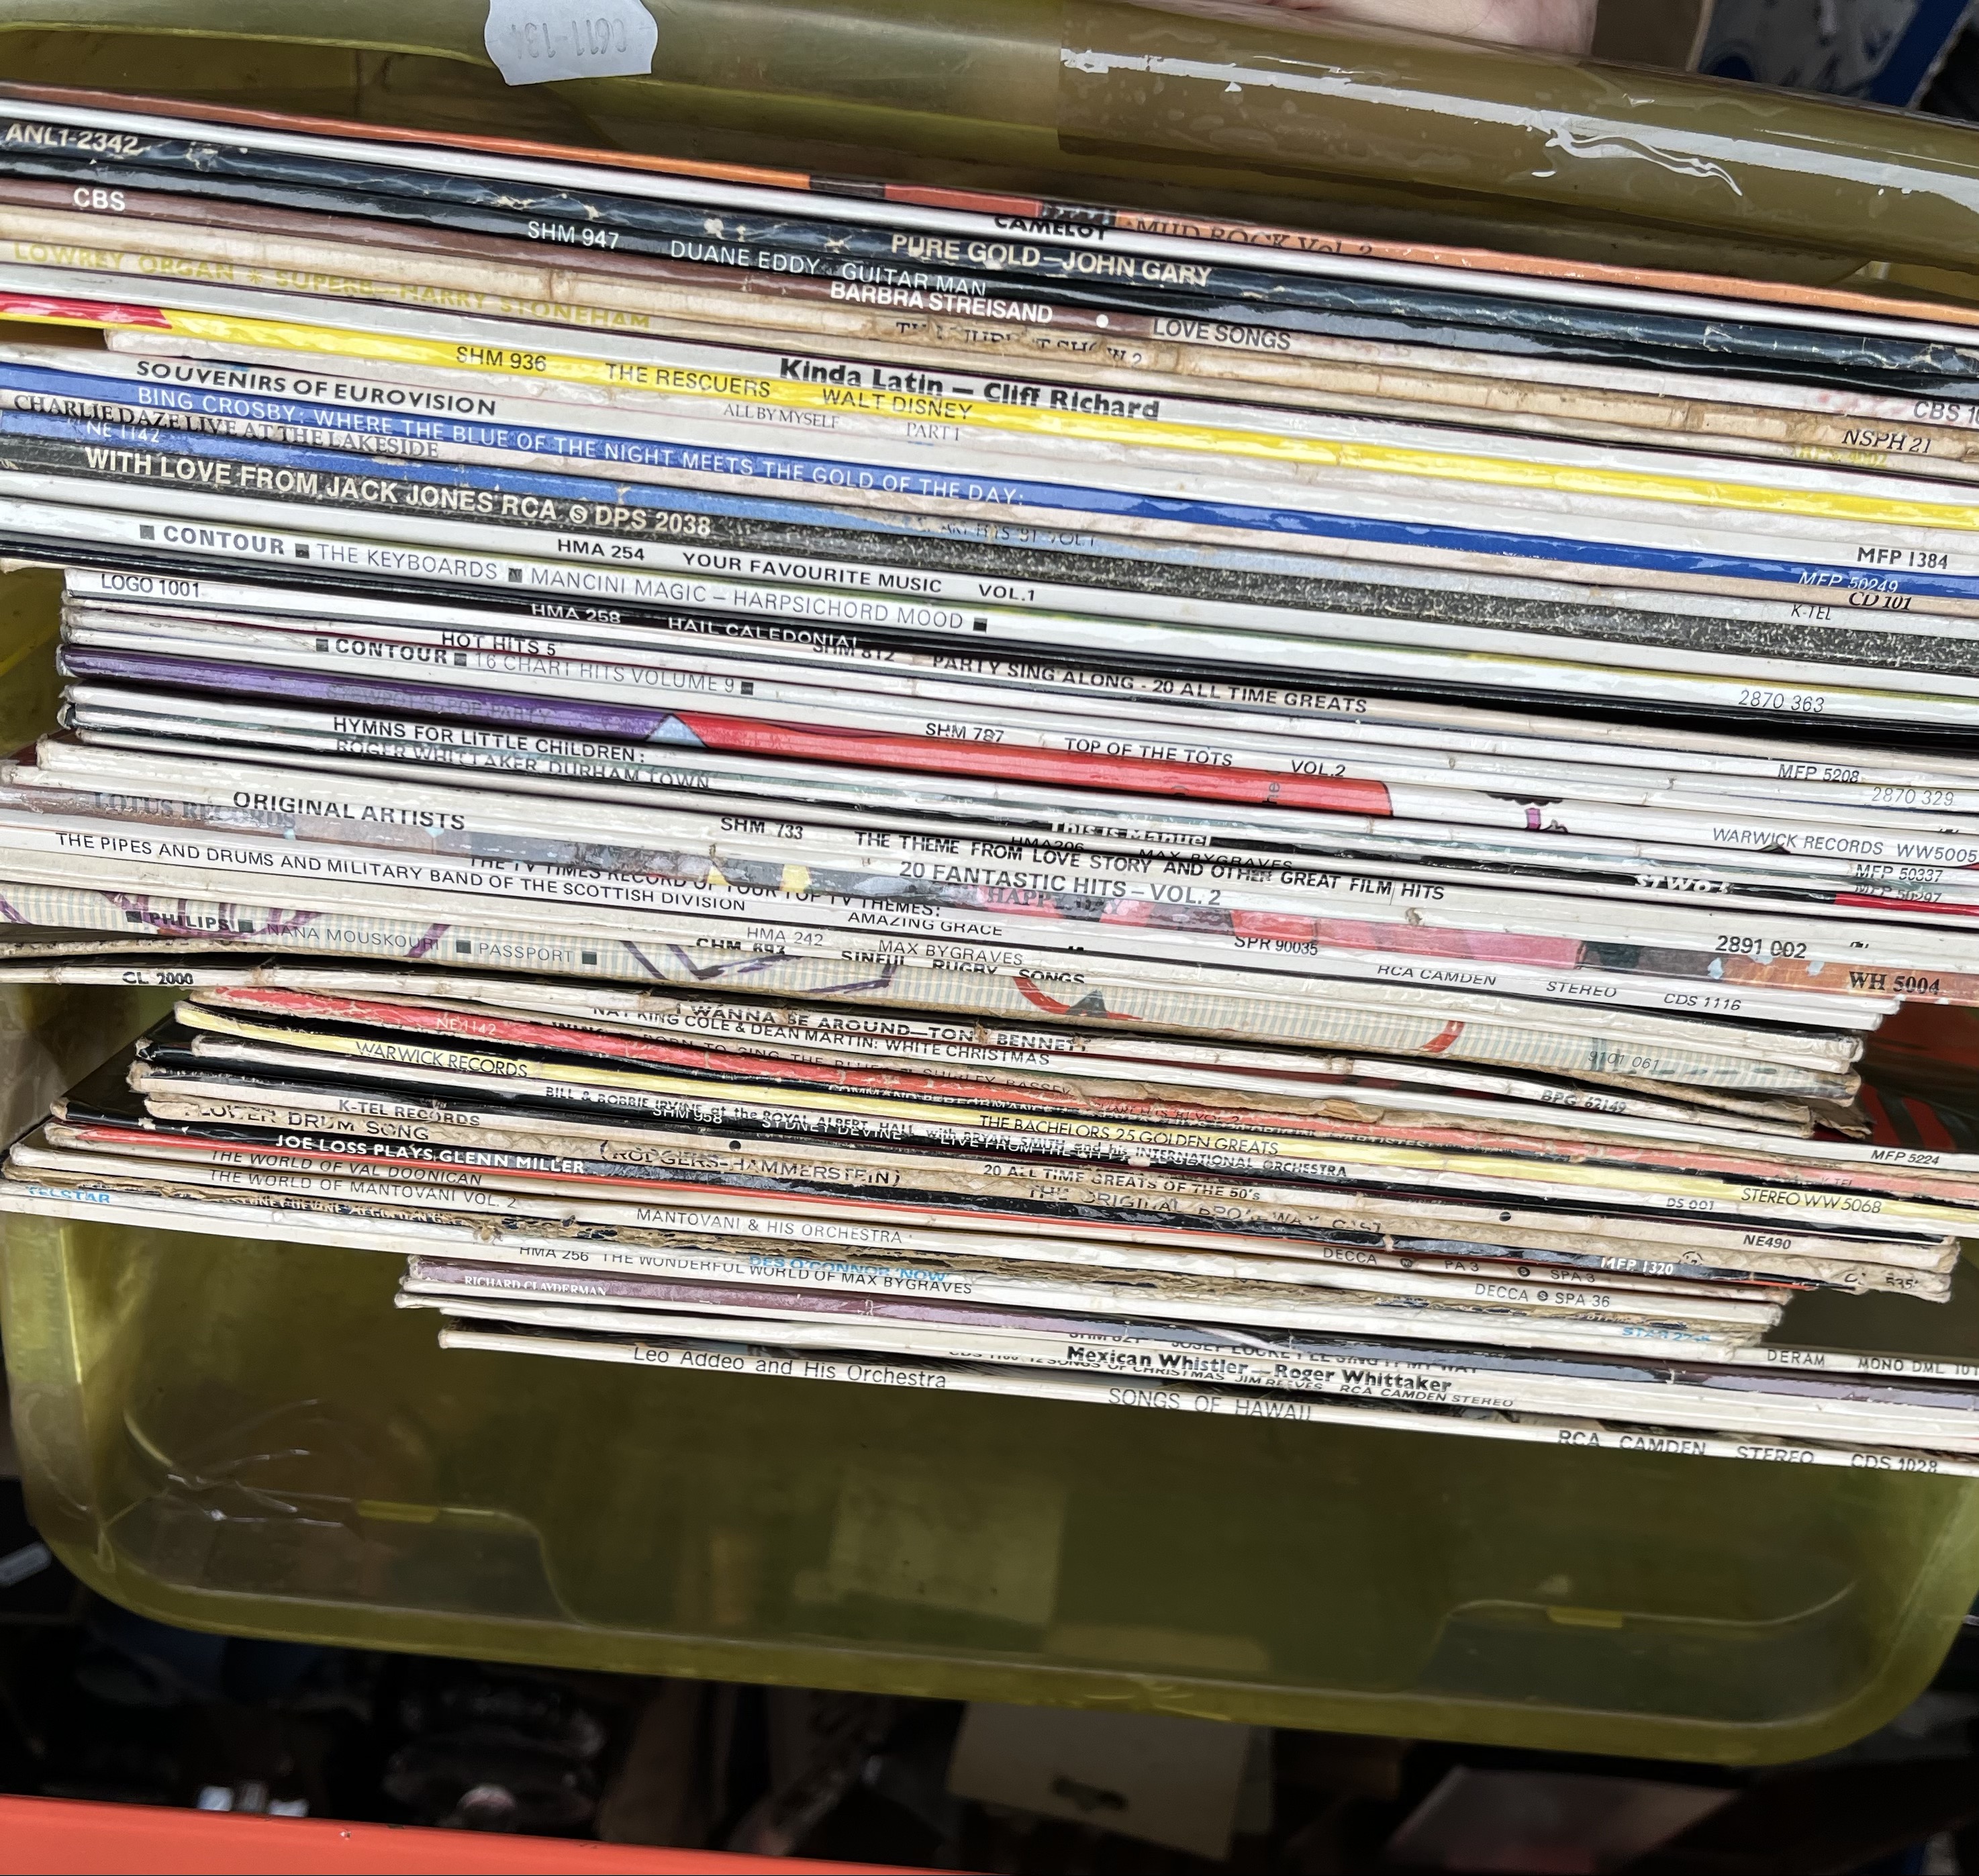 A box of LP vinyl records.